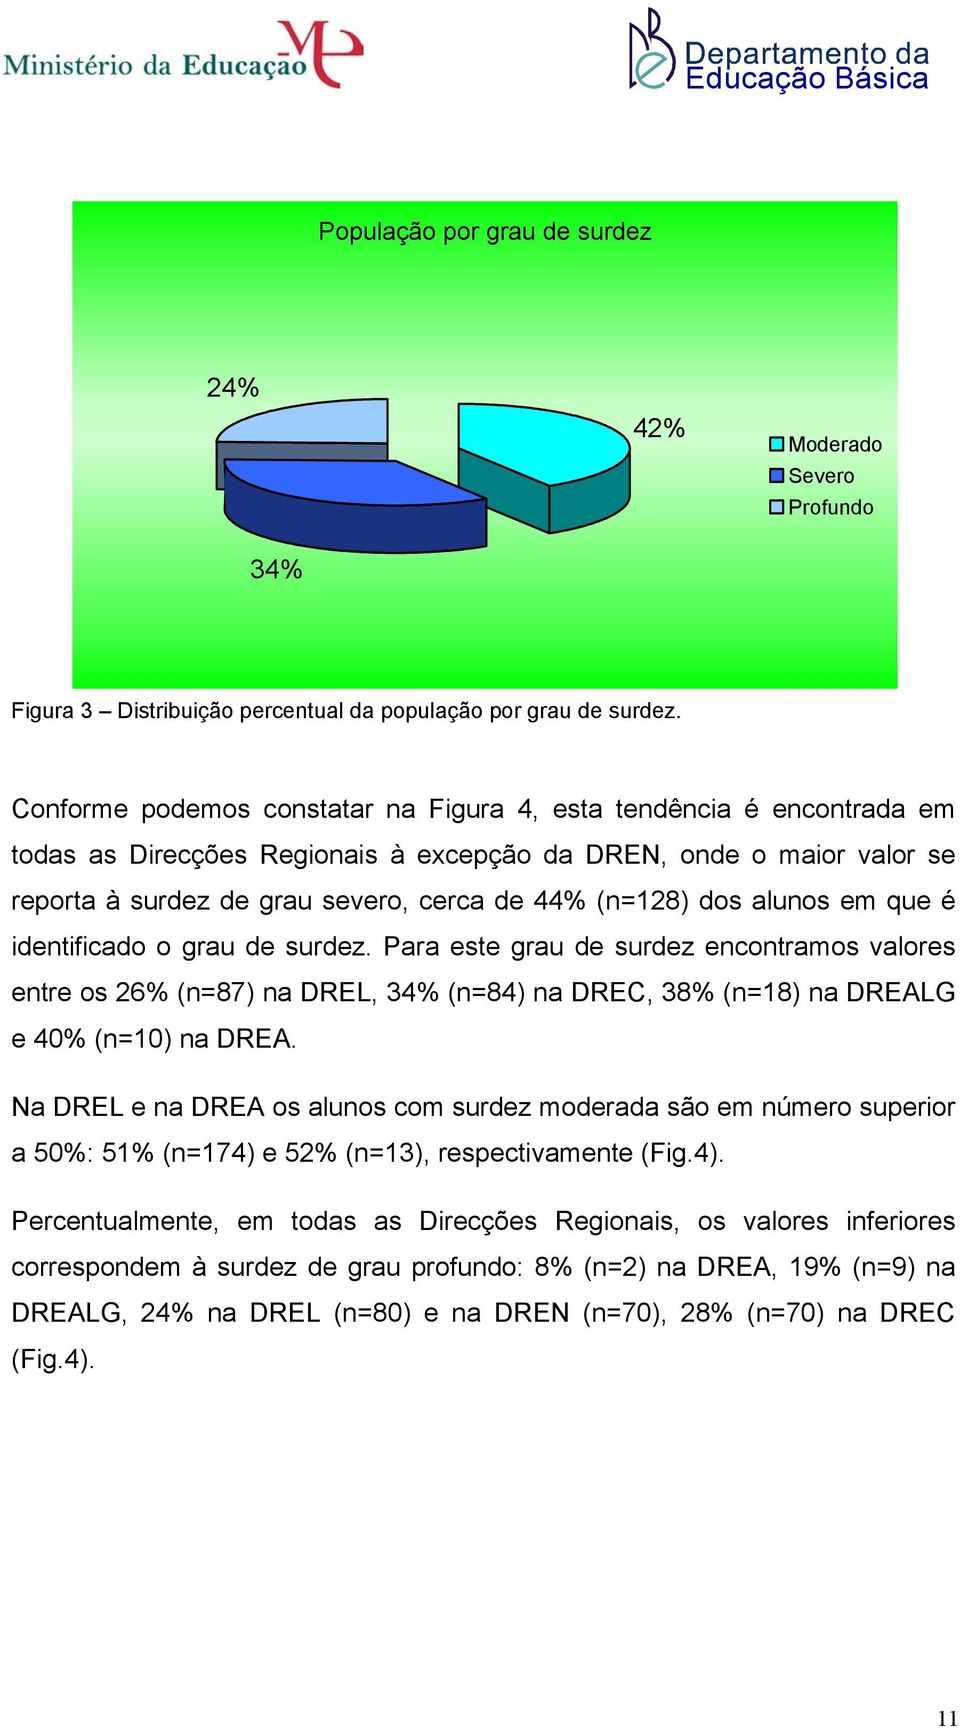 alunos em que é identificado o grau de surdez. Para este grau de surdez encontramos valores entre os 26% (n=87) na DREL, 34% (n=84) na DREC, 38% (n=18) na DREALG e 40% (n=10) na DREA.